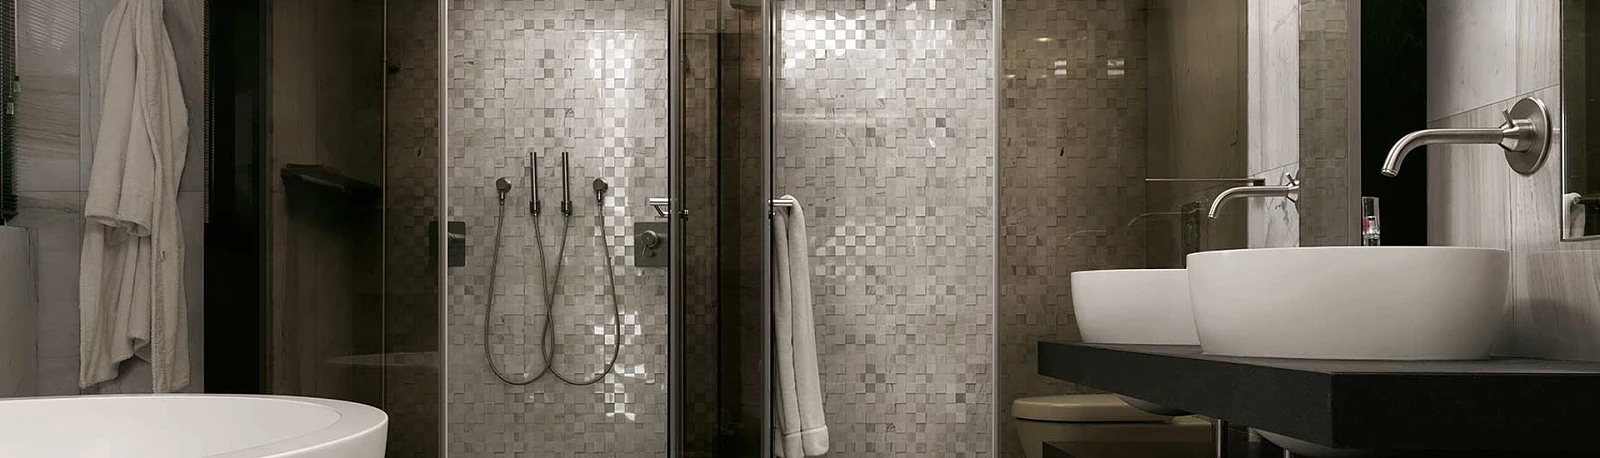 łaz_k.jpg  Duża łazienka z wanną i prysznicem x La Mania | Wyposażenie wnętrz MAXFLIZ